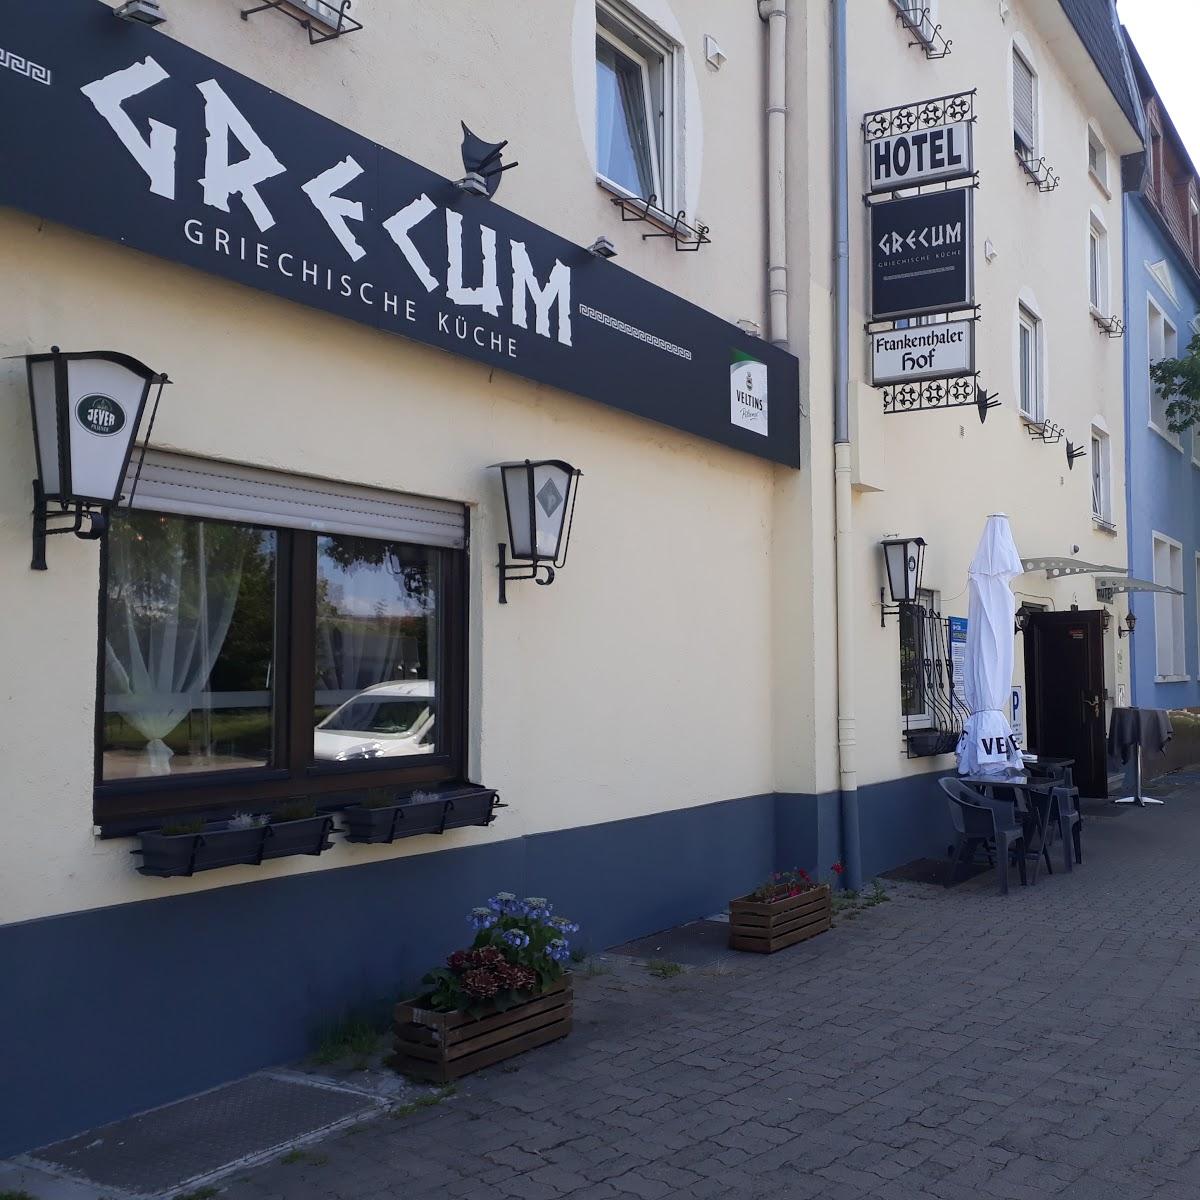 Restaurant "Restaurant Grecum" in  Frankenthal